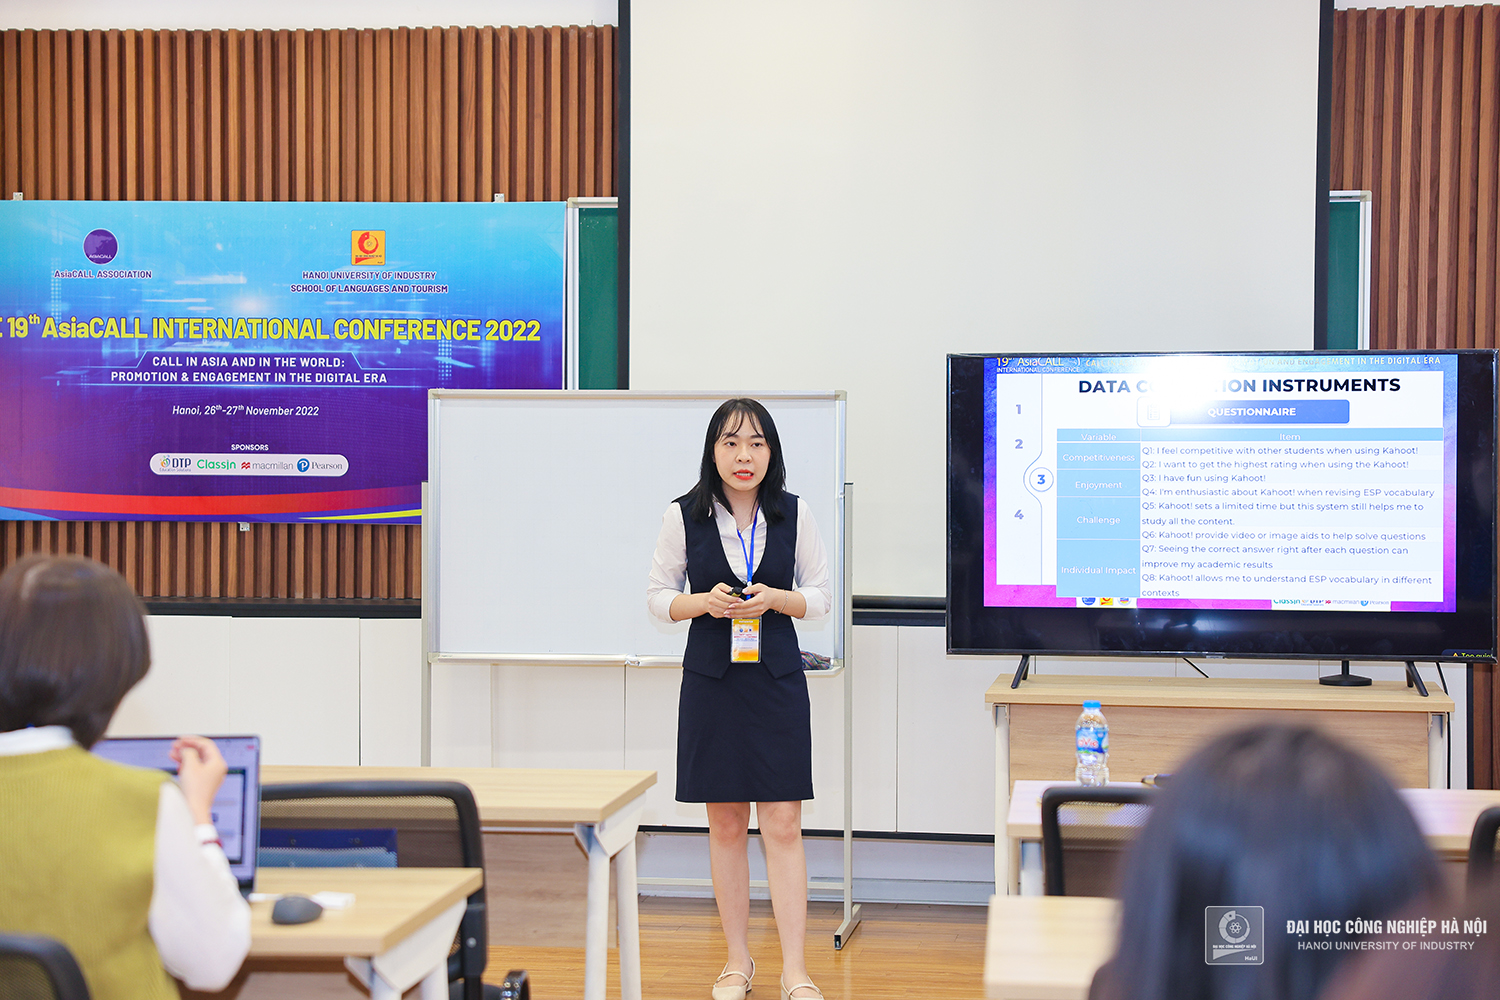 Hội thảo quốc tế AsiaCALL lần thứ 19 tại Trường Đại học Công nghiệp Hà Nội